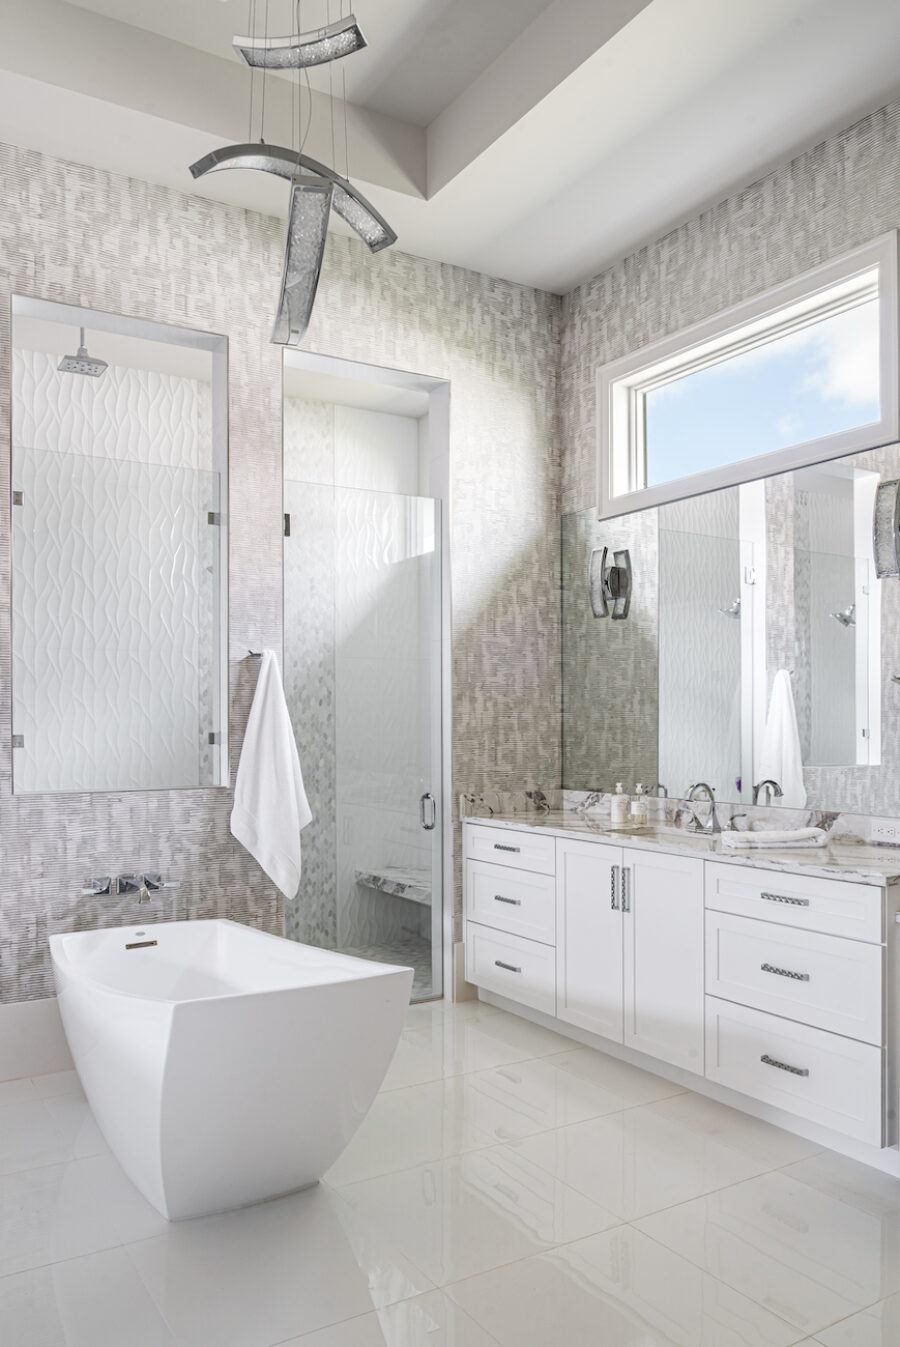 primary-bathroom-interior-design-bonita-bay-fl